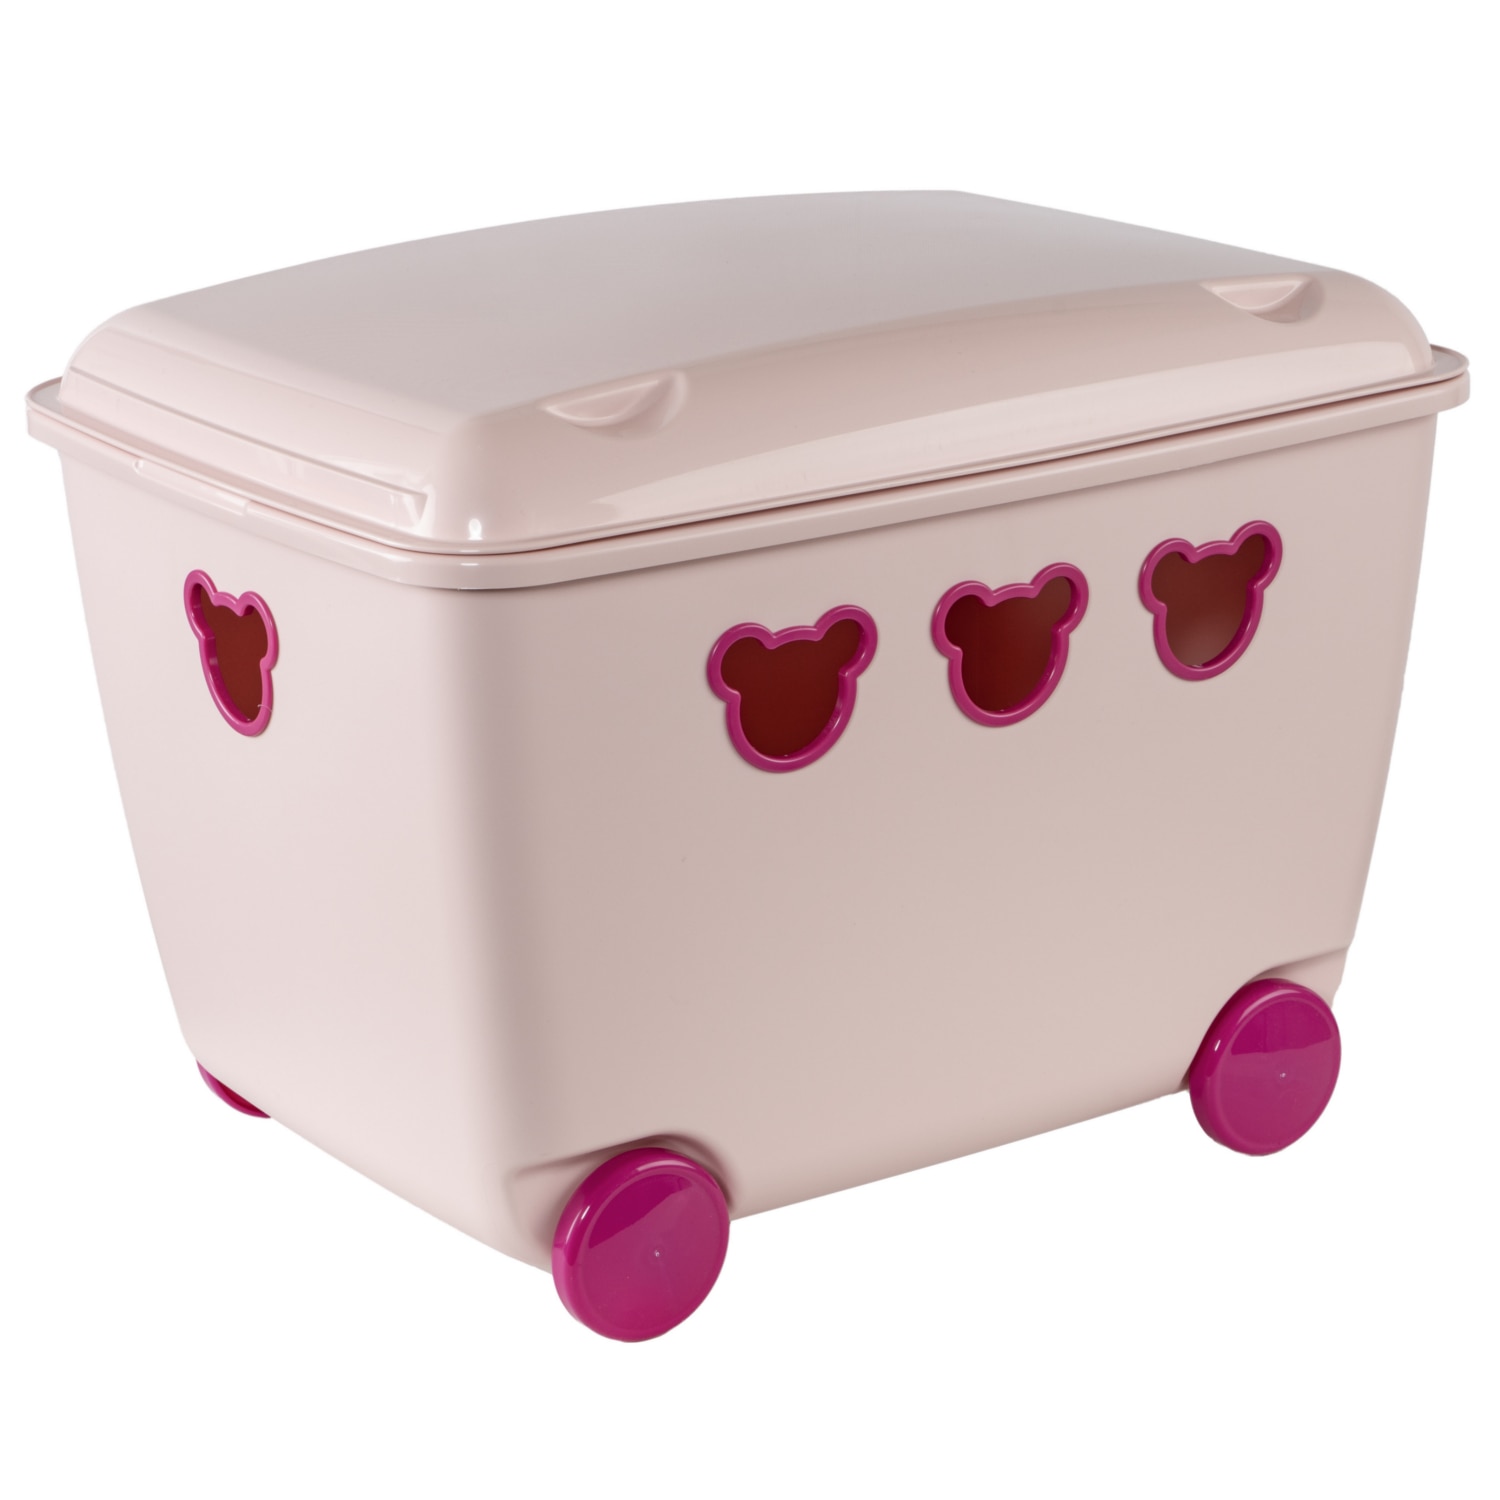 Cutie cu si capac pentru depozitarea jucariilor,culoare roz,55l - eMAG.ro